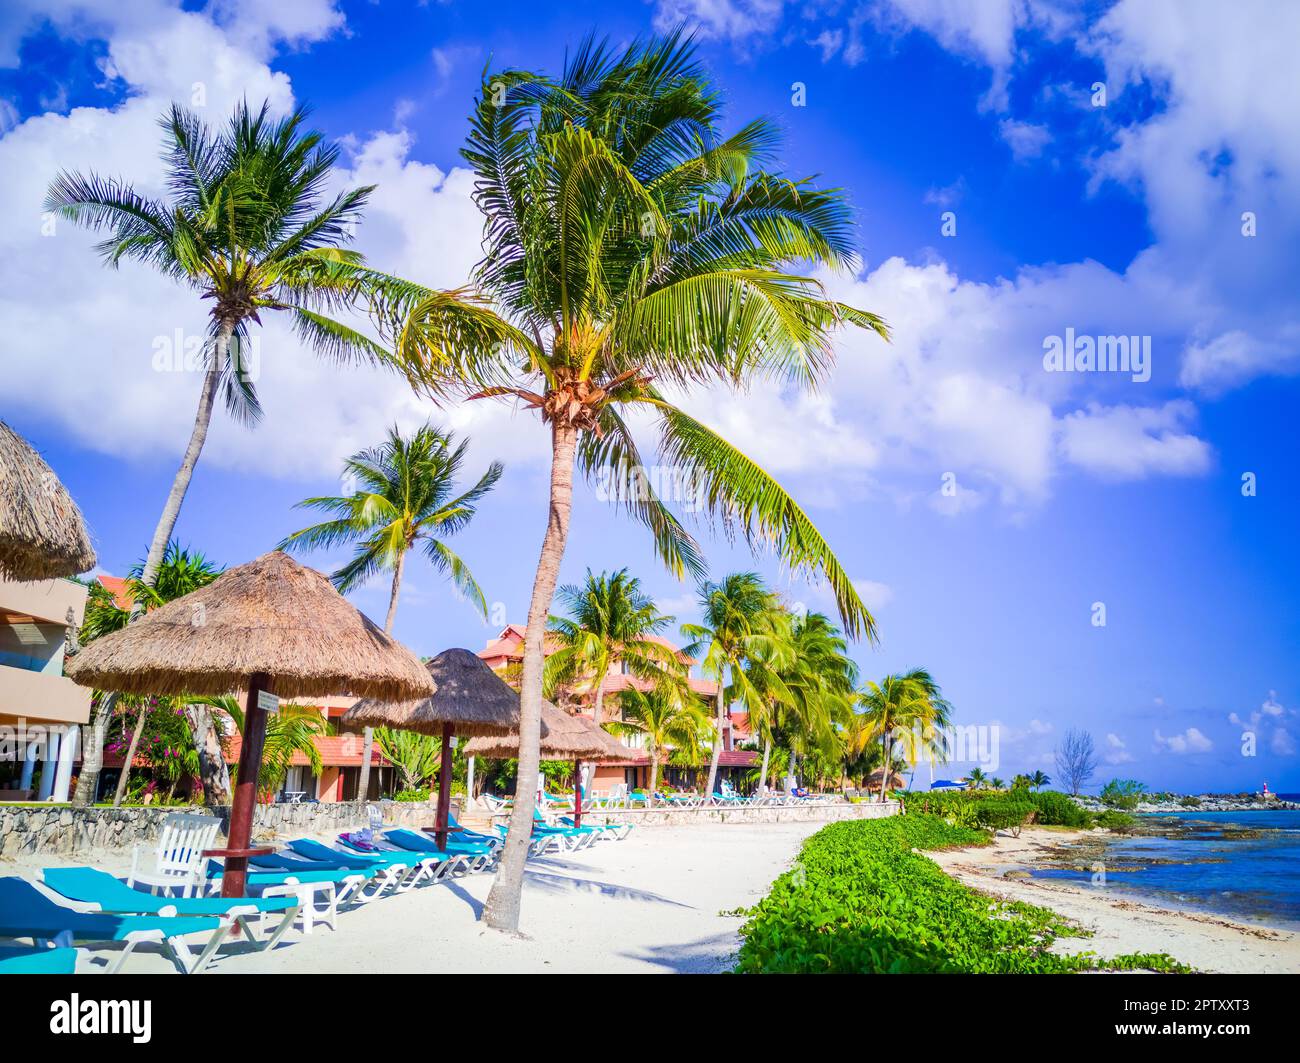 Puerto Aventuras, Messico. Piccola cittadina di villeggiatura situata nella Riviera Maya, conosciuta per le sue splendide spiagge e il suo porticciolo, Cancun. Foto Stock